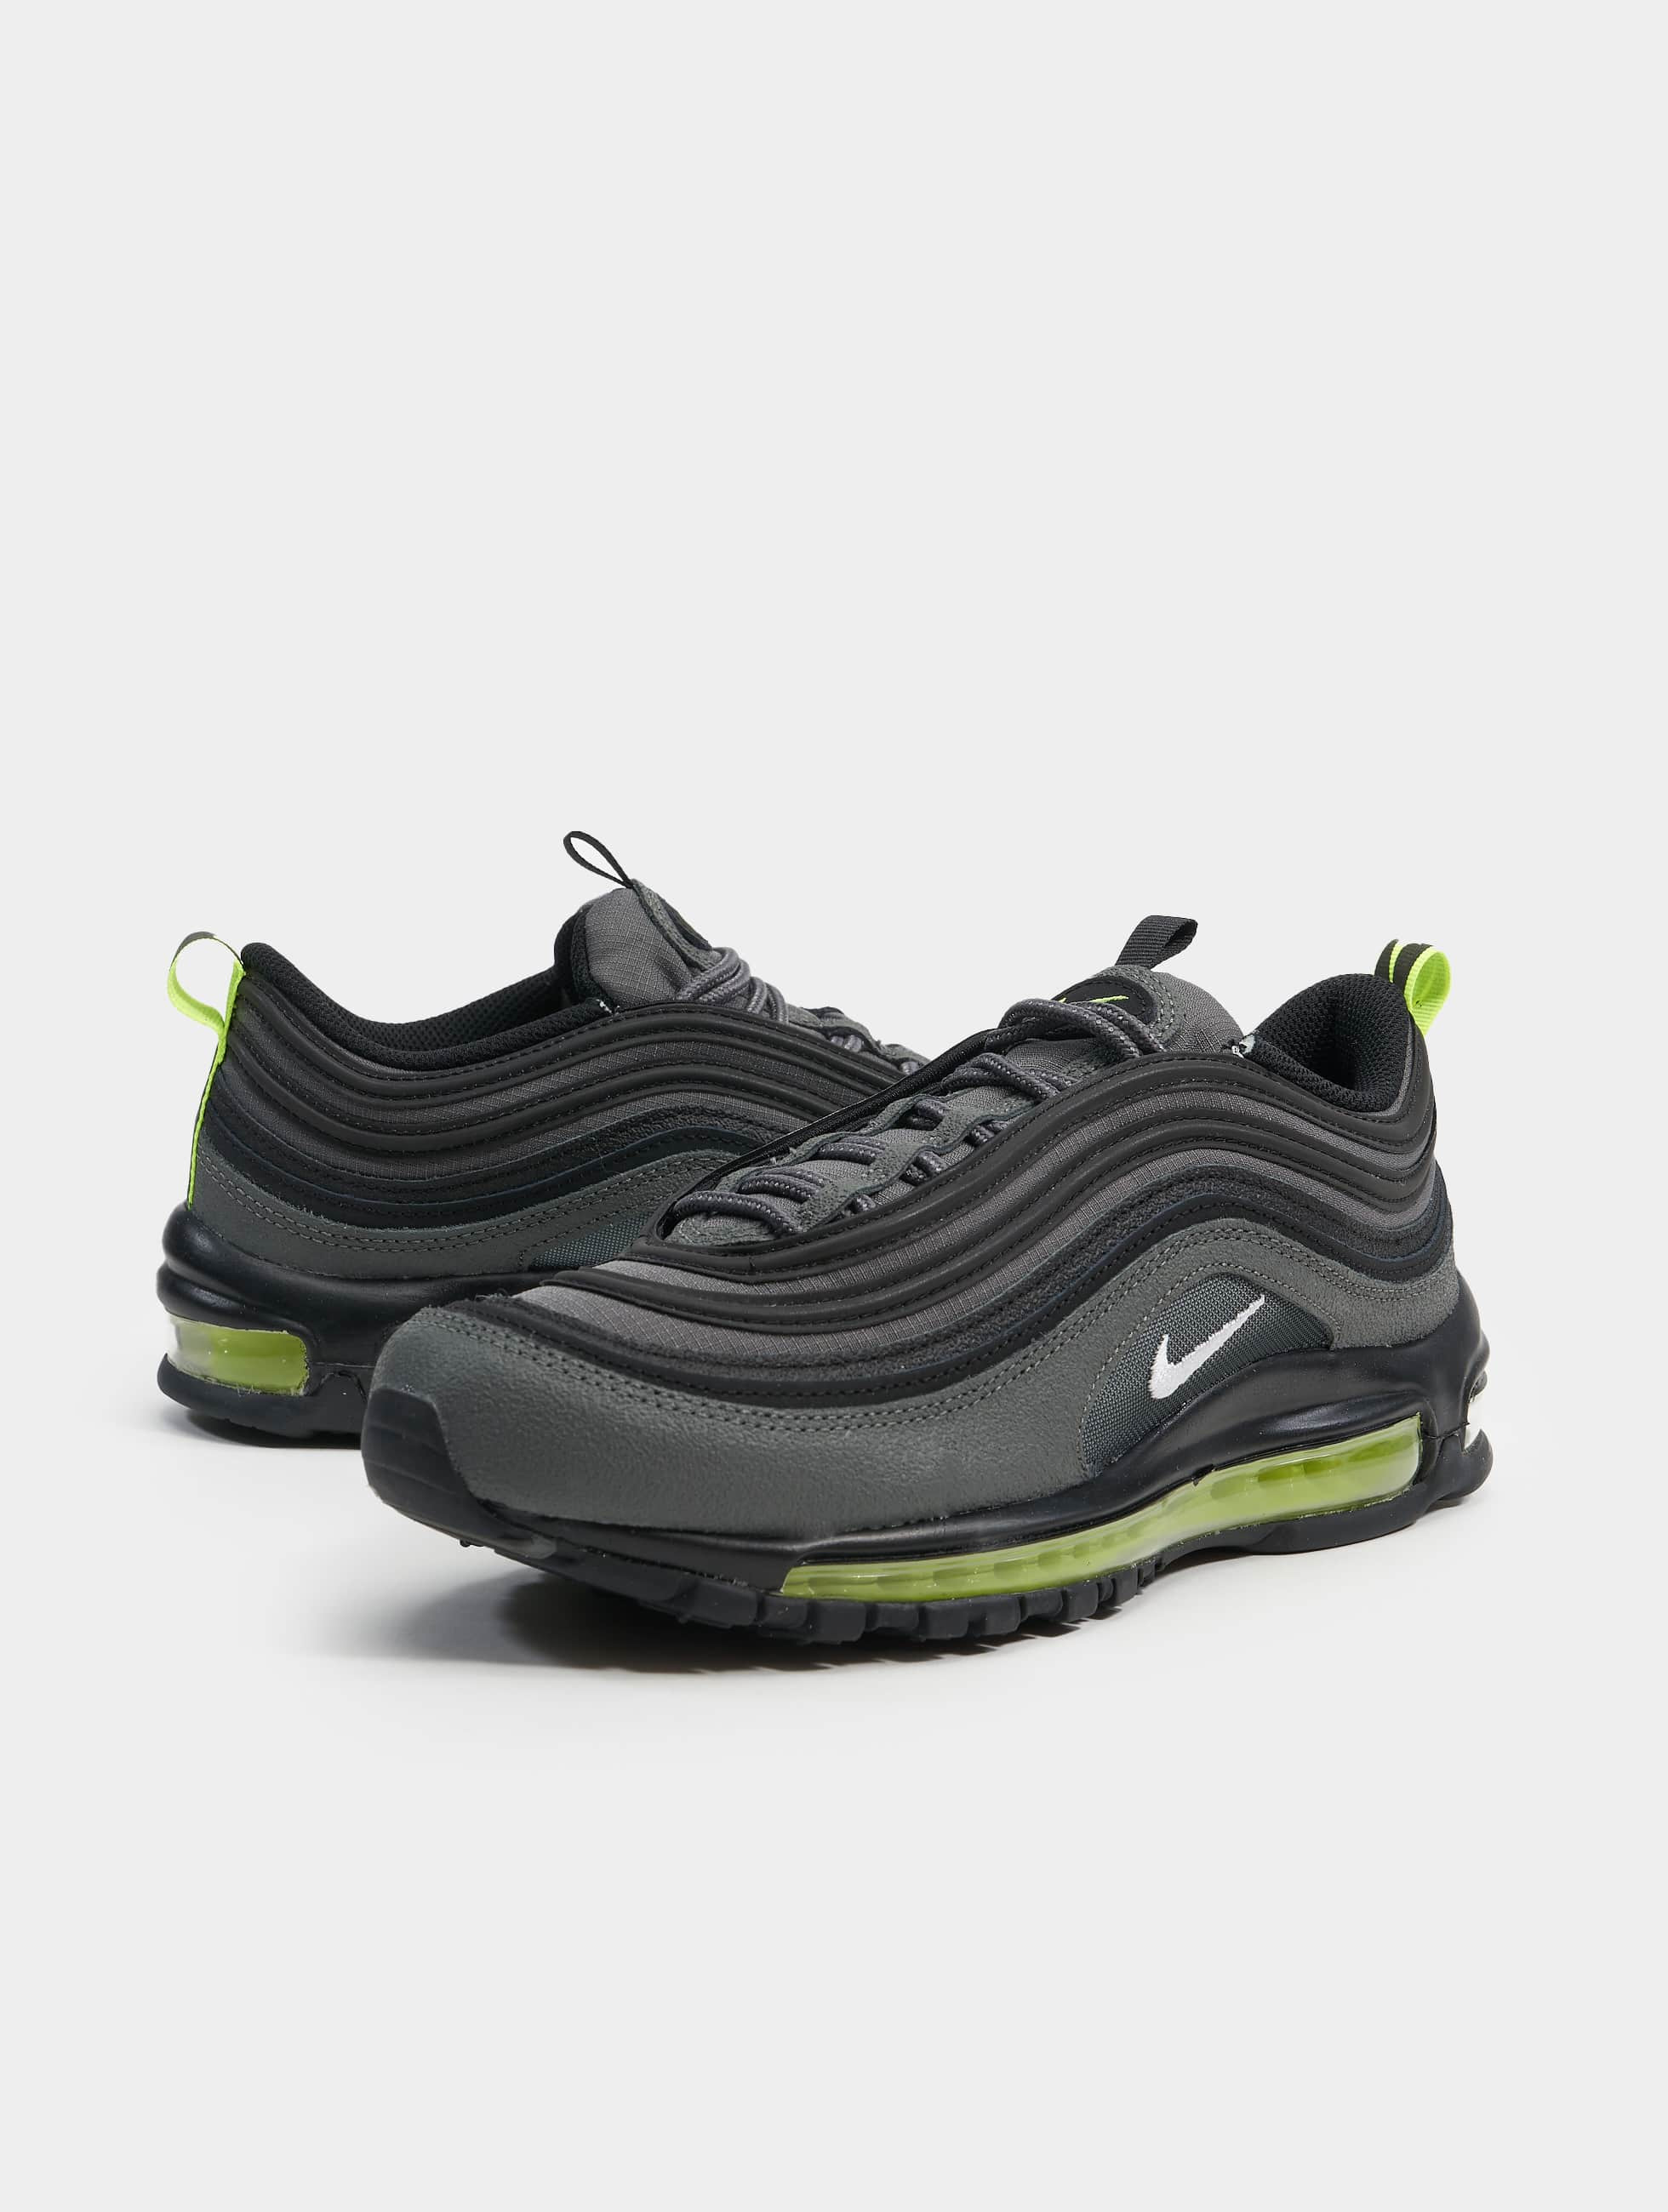 Onschuldig Voorgevoel Incarijk Nike schoen / sneaker Air Max 97 in grijs 982170